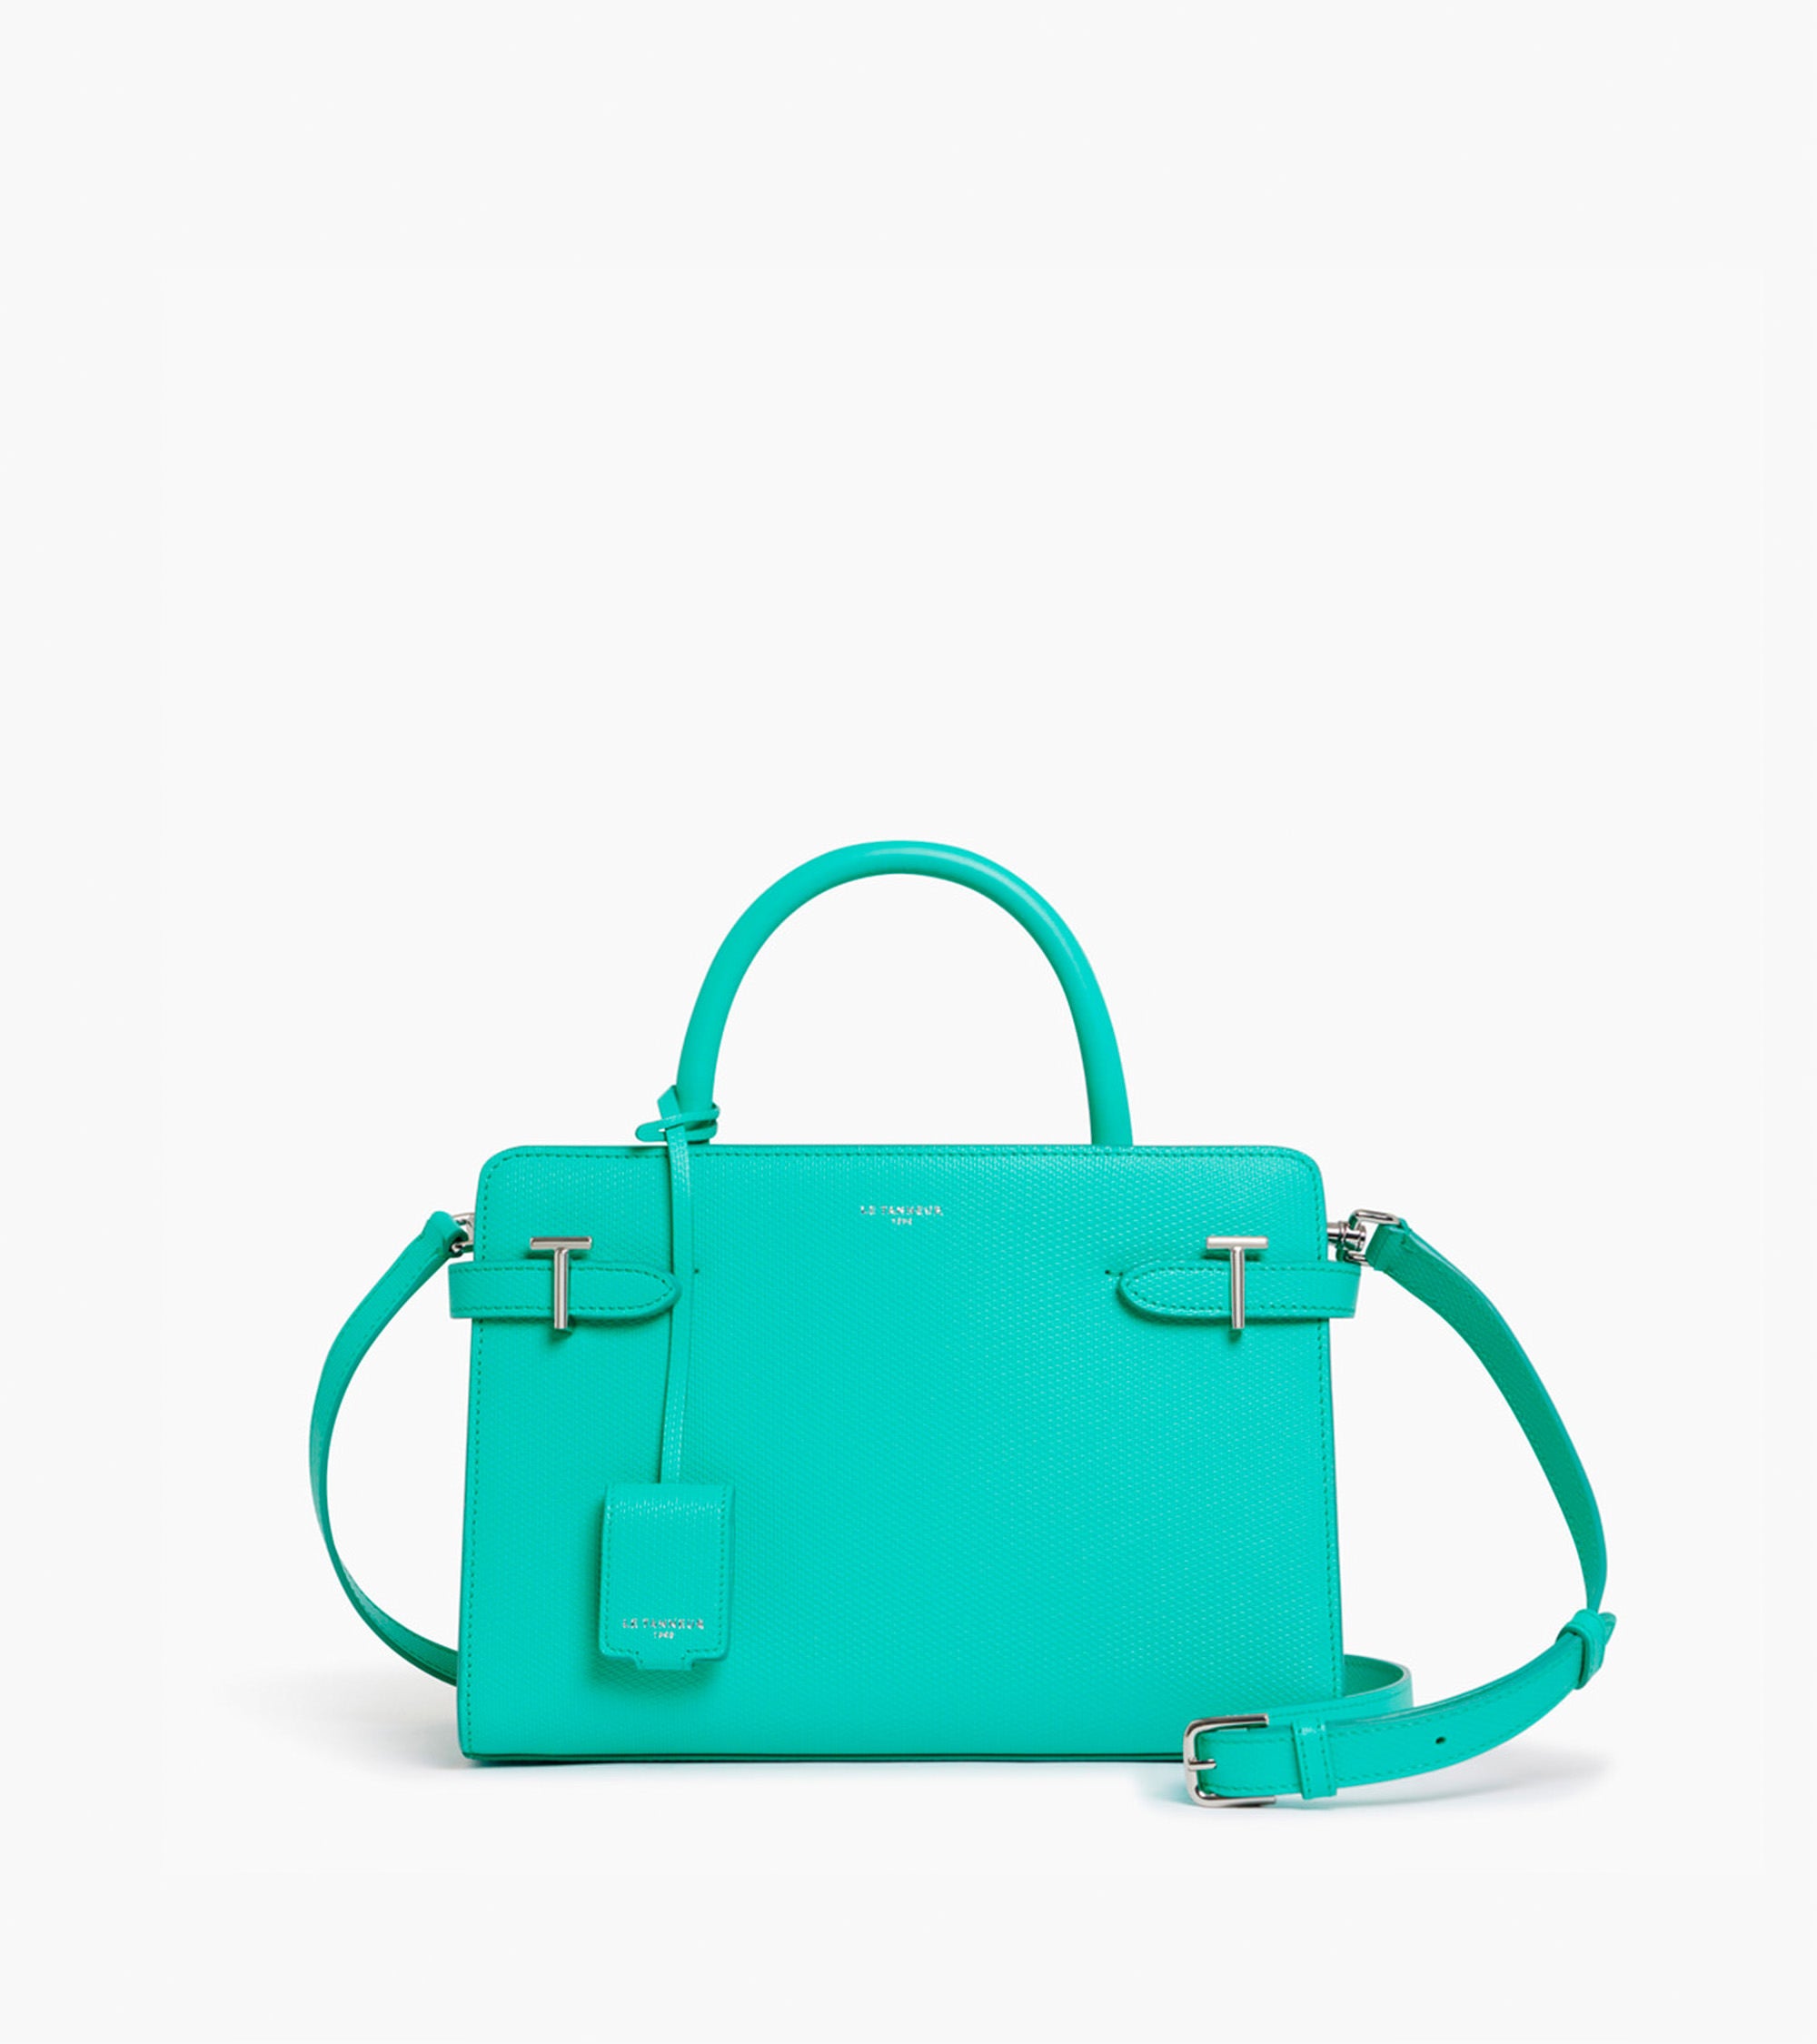 Emilie medium-sized handbag in signature T leather